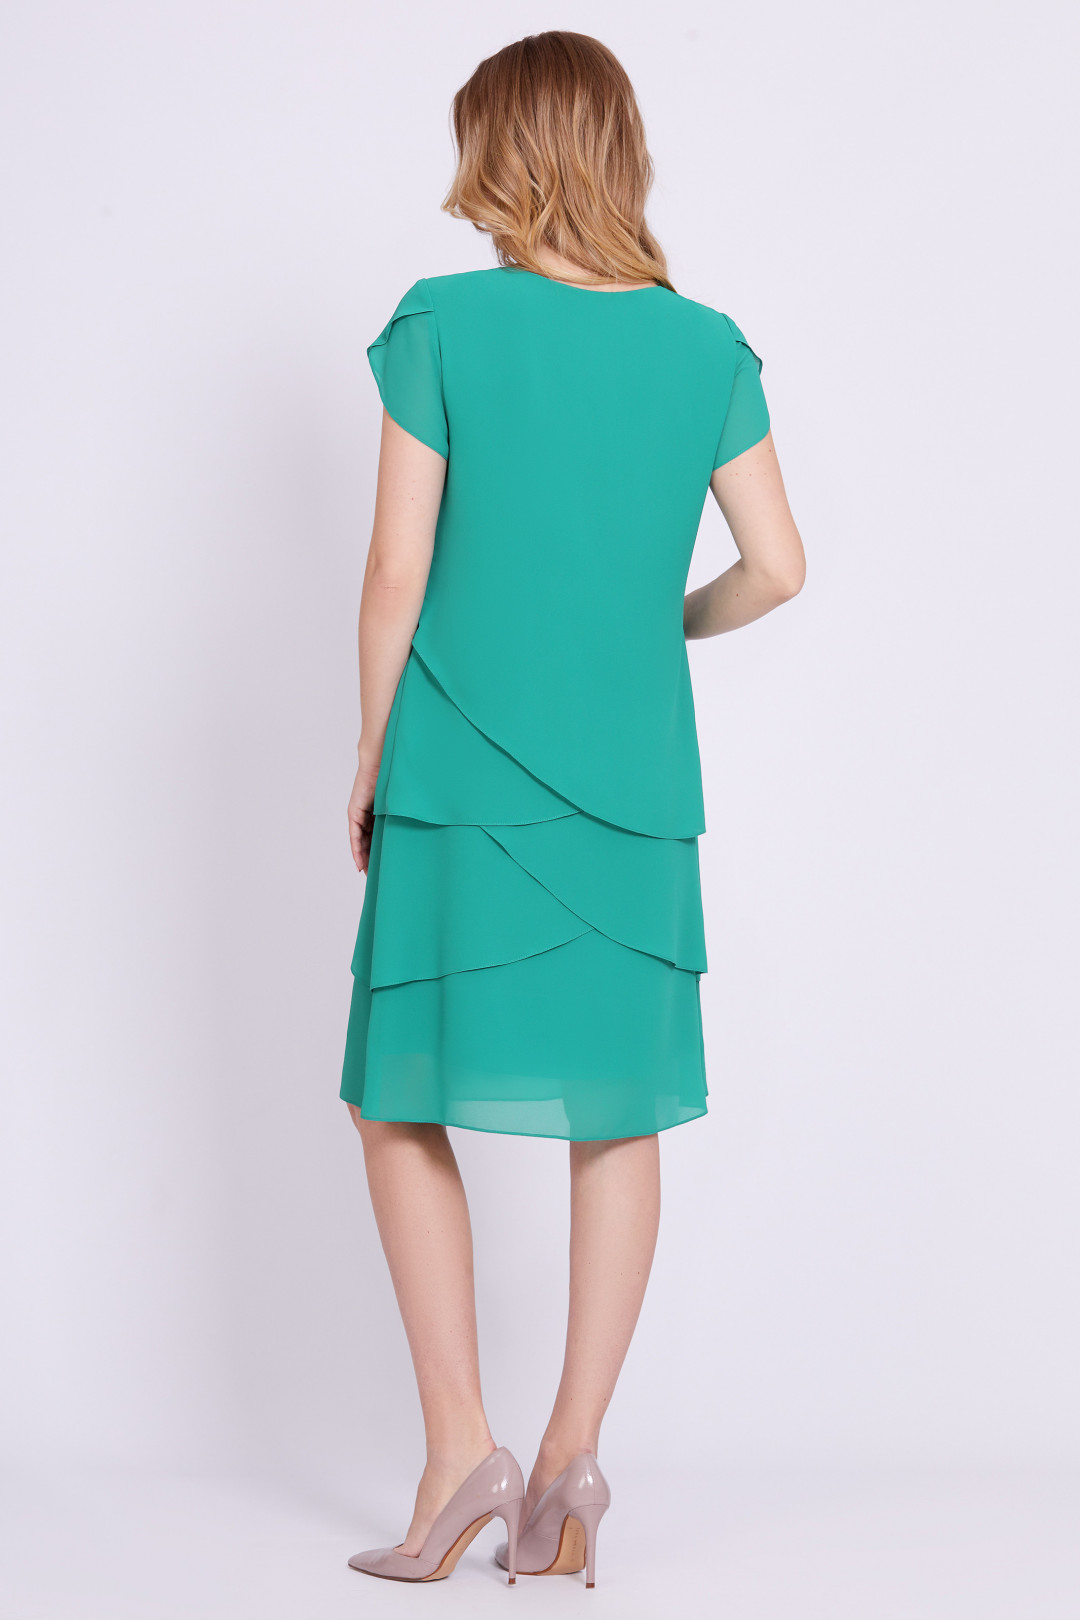 Платье Bazalini 4746 зеленый